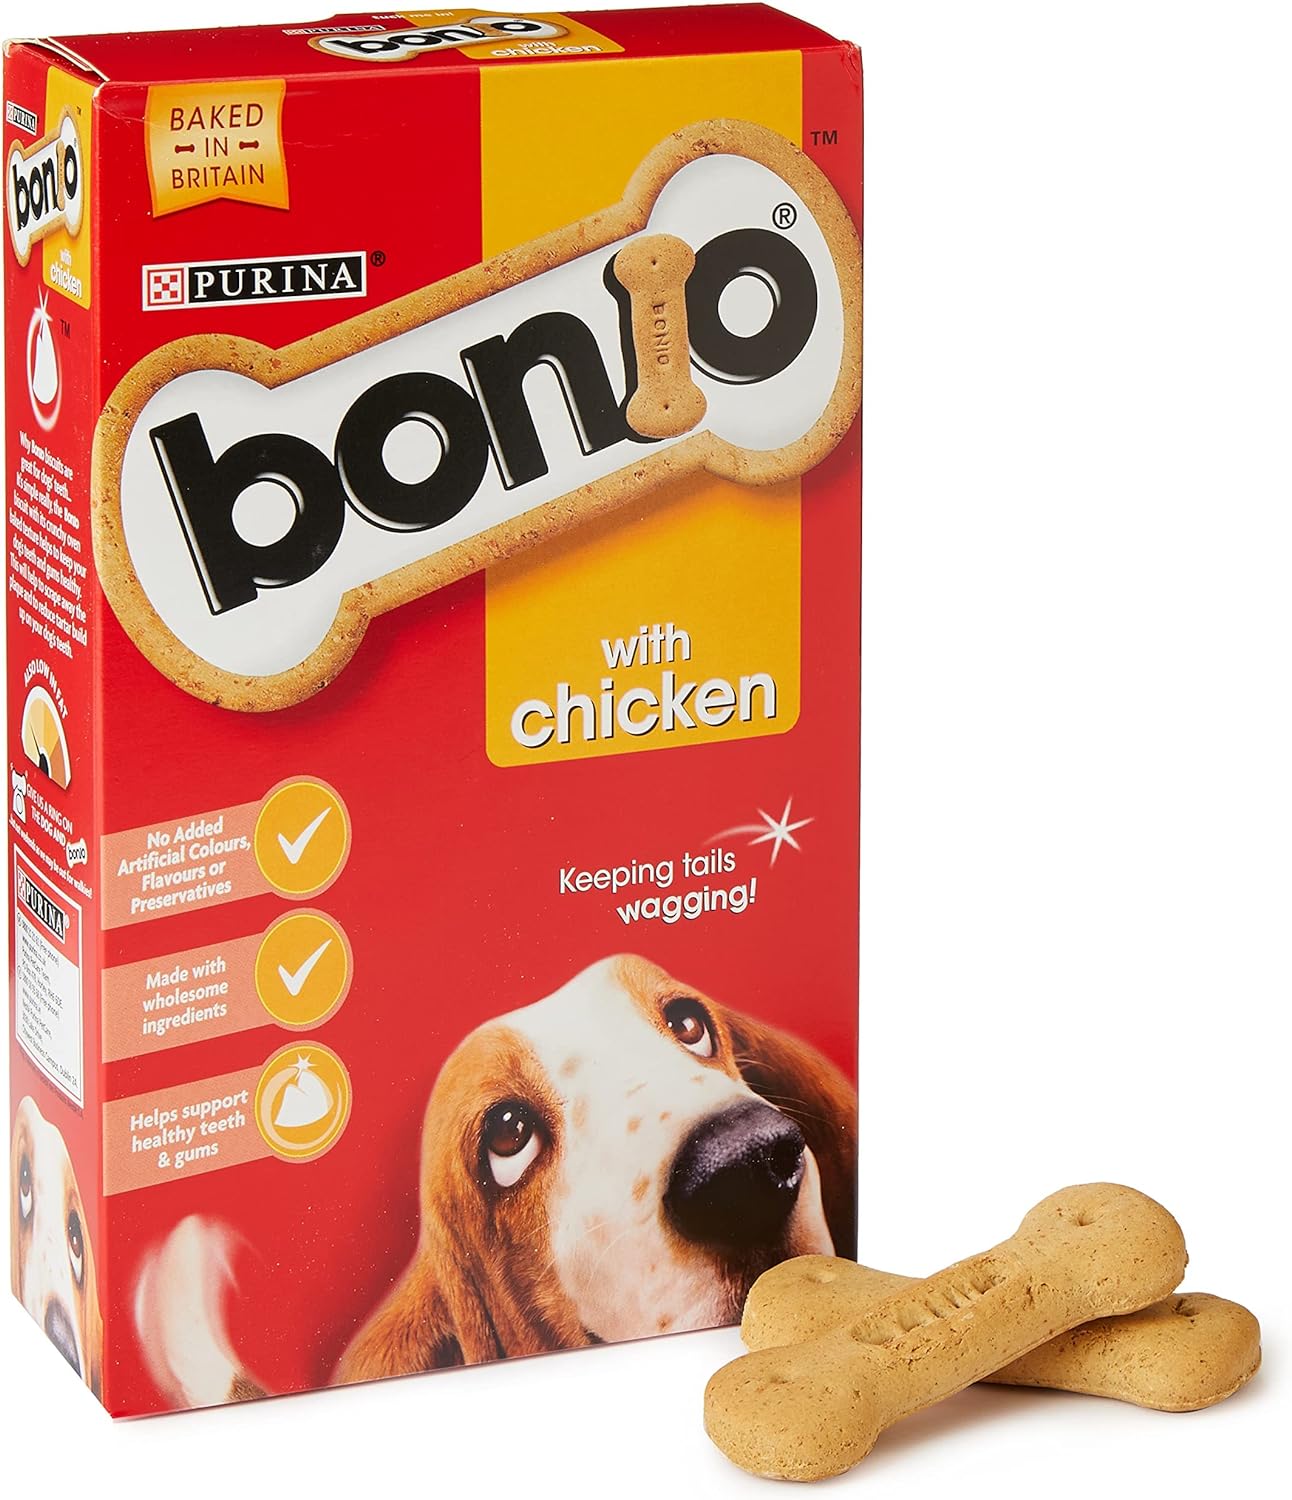 Bonio Chicken 650g